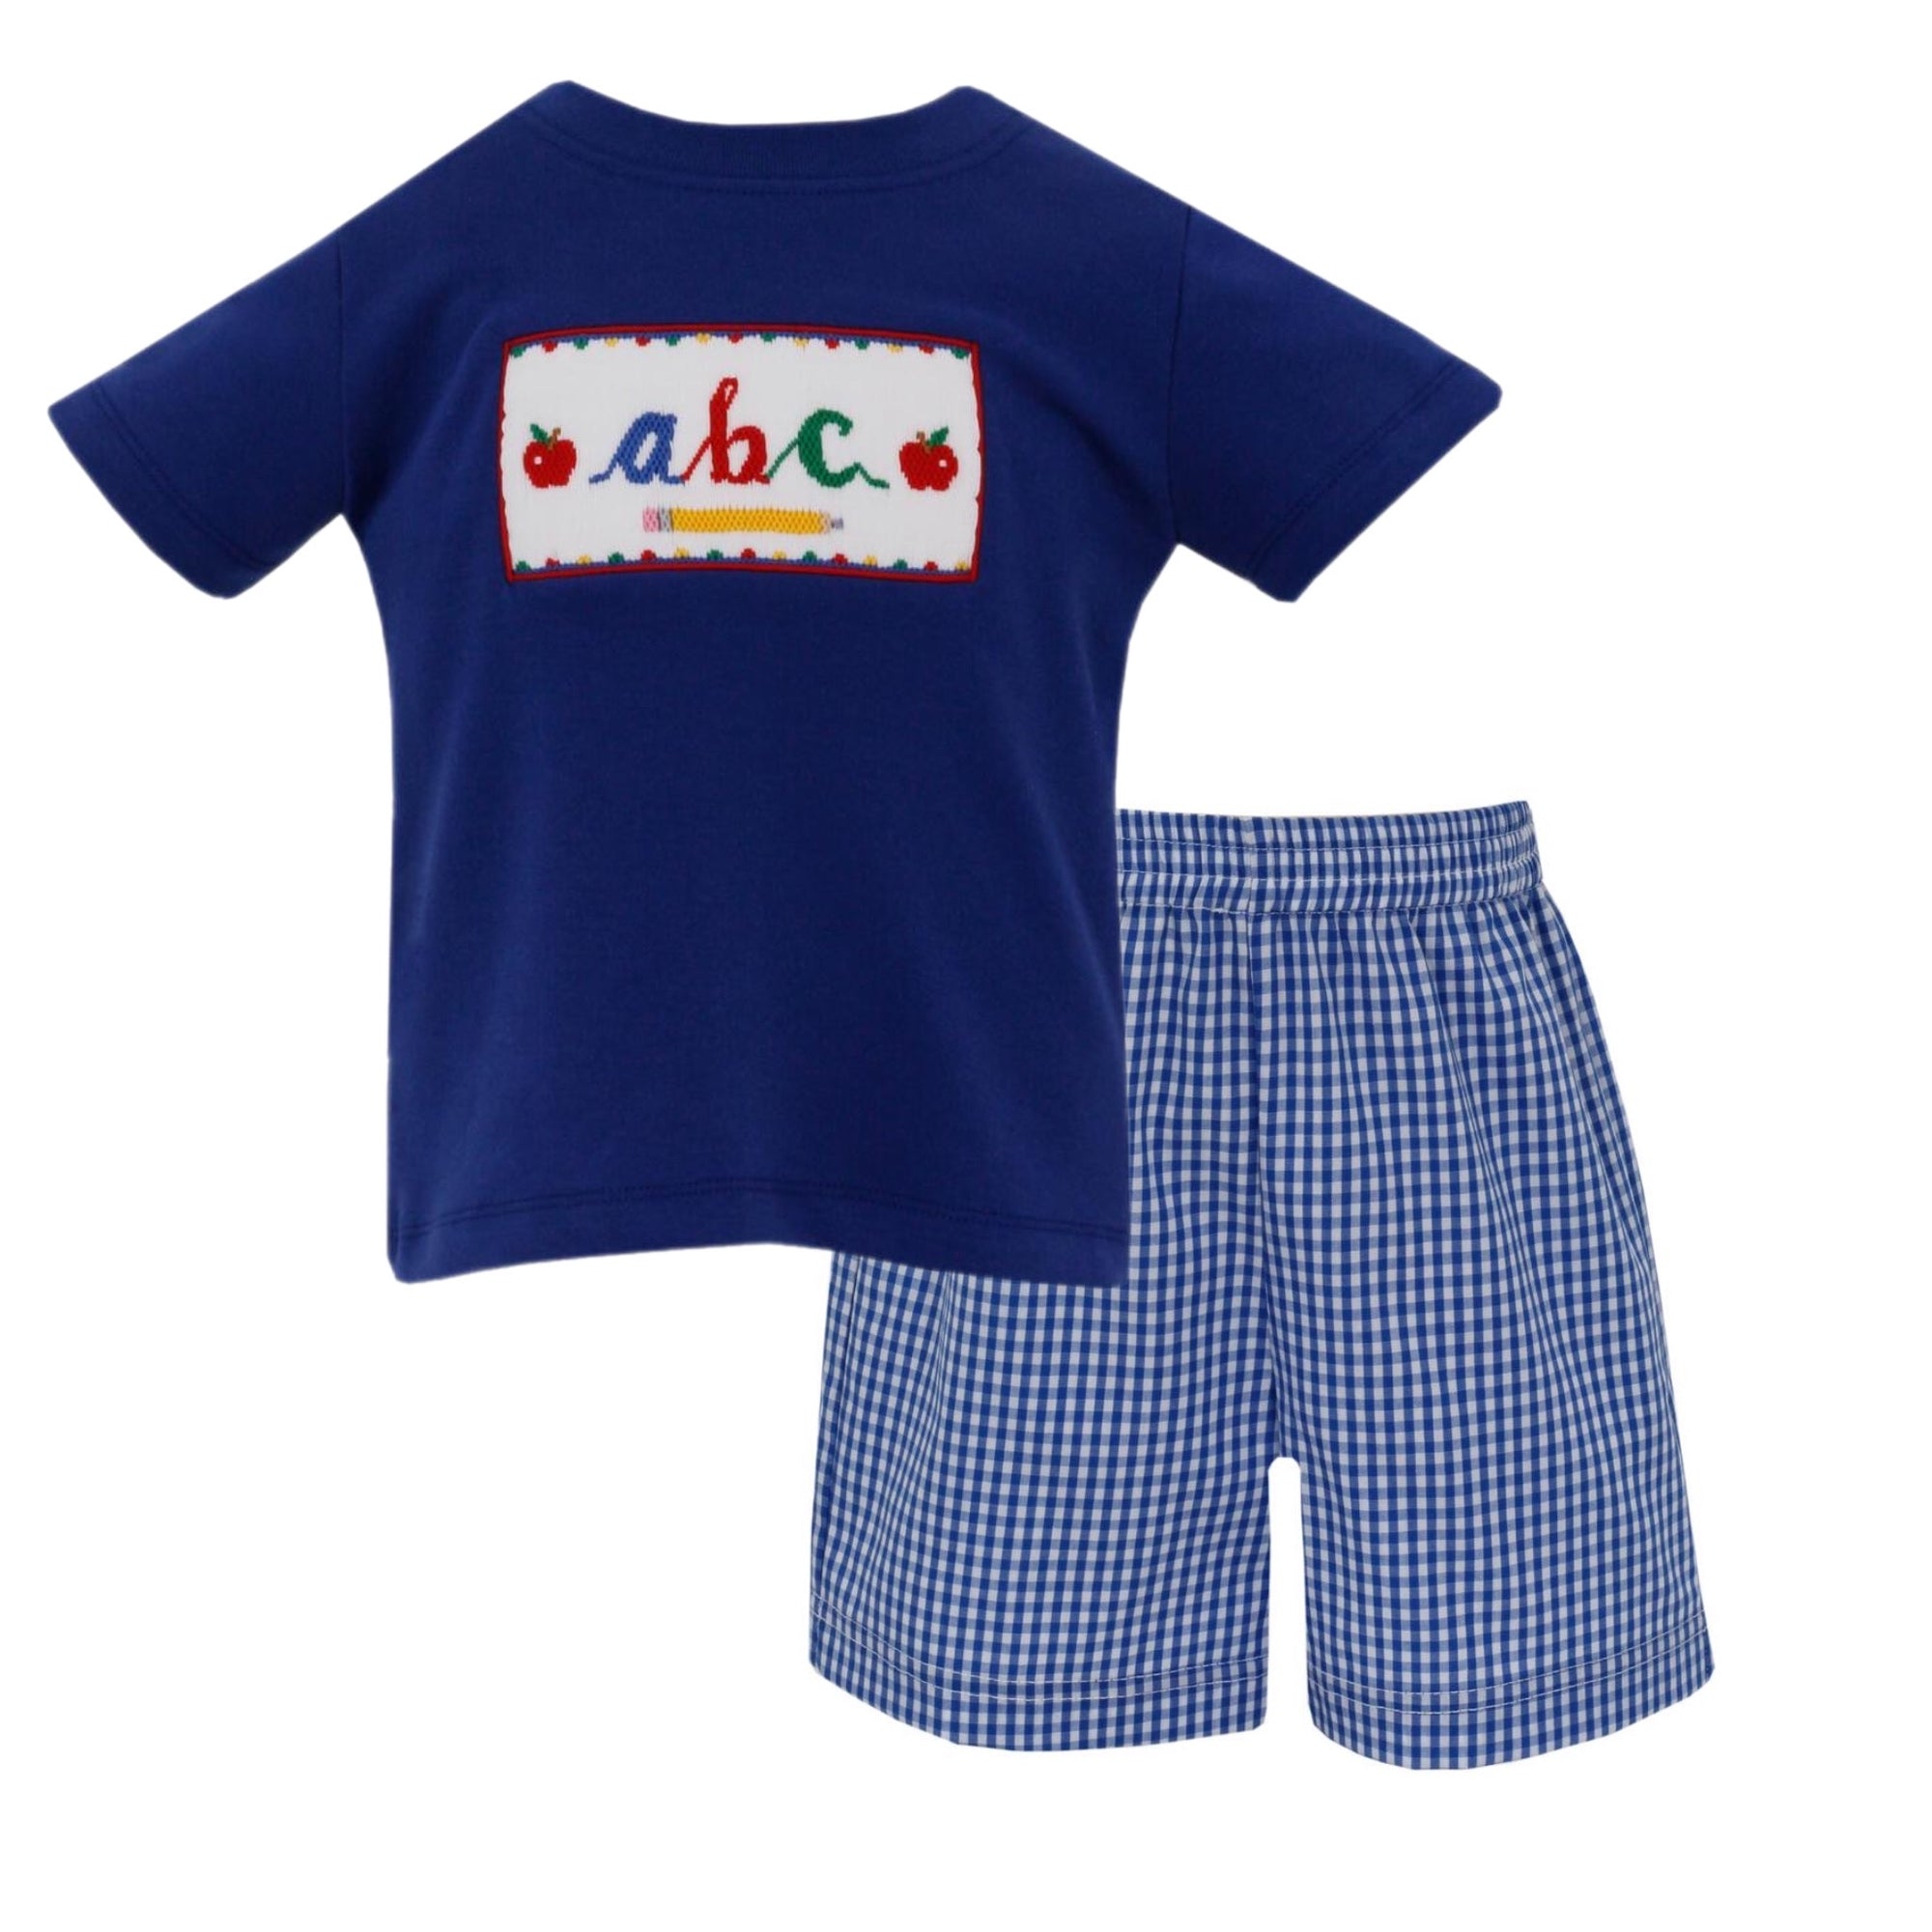 Boys ABC Smocked T-Shirt and Shorts Set